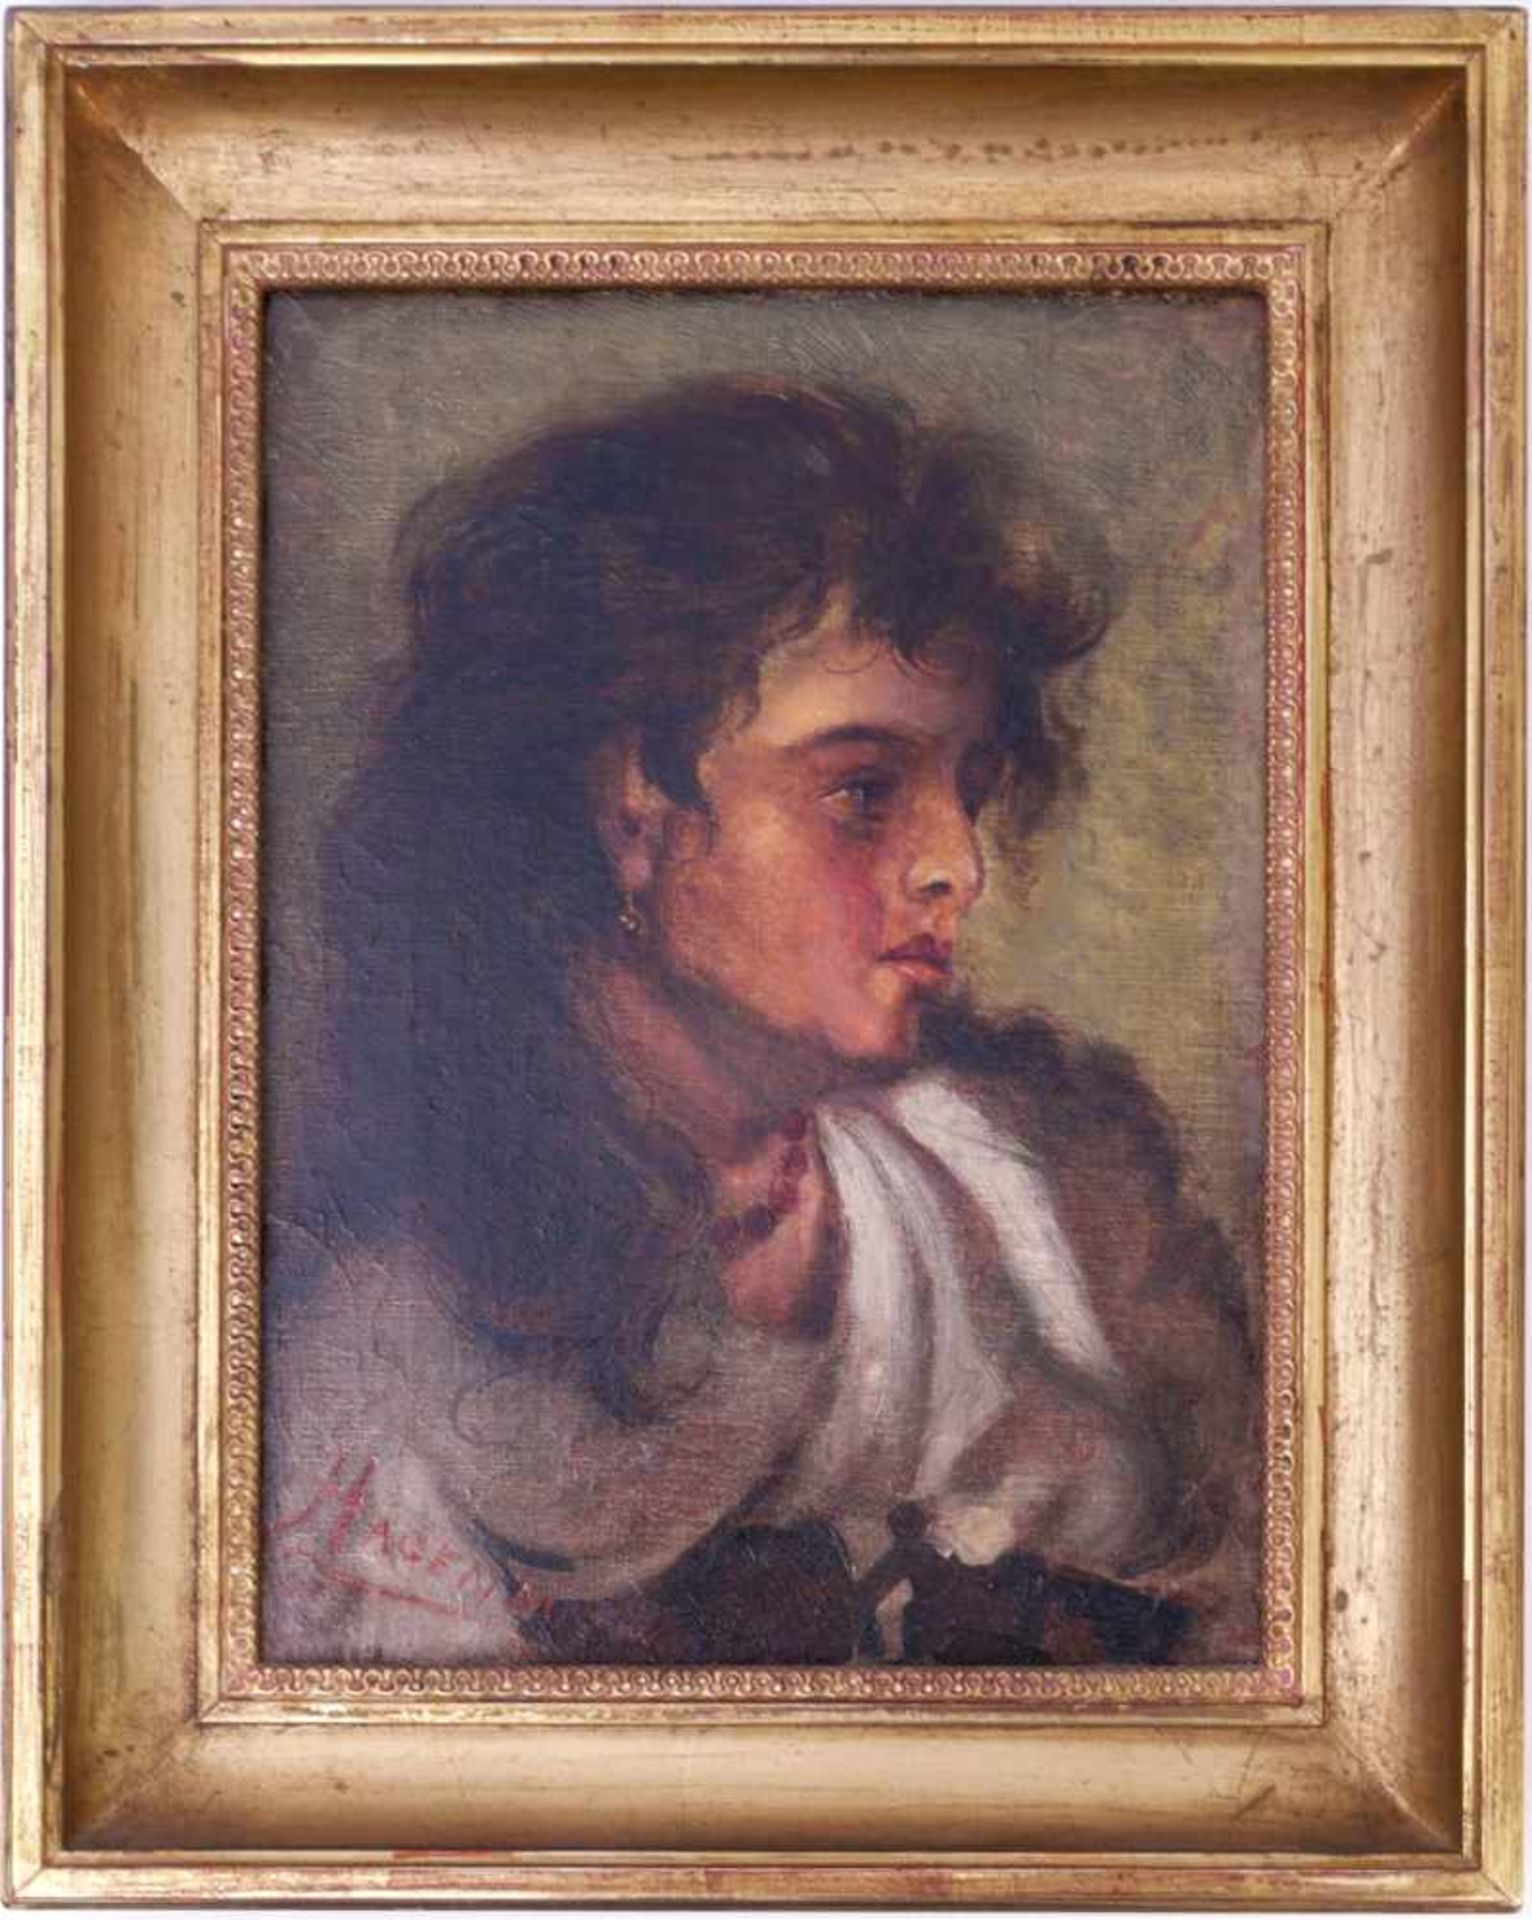 Sig. Hagenauer - Charakterportrait Zigeunerin um 1900Im Profil dargestellte junge Frau mit wild